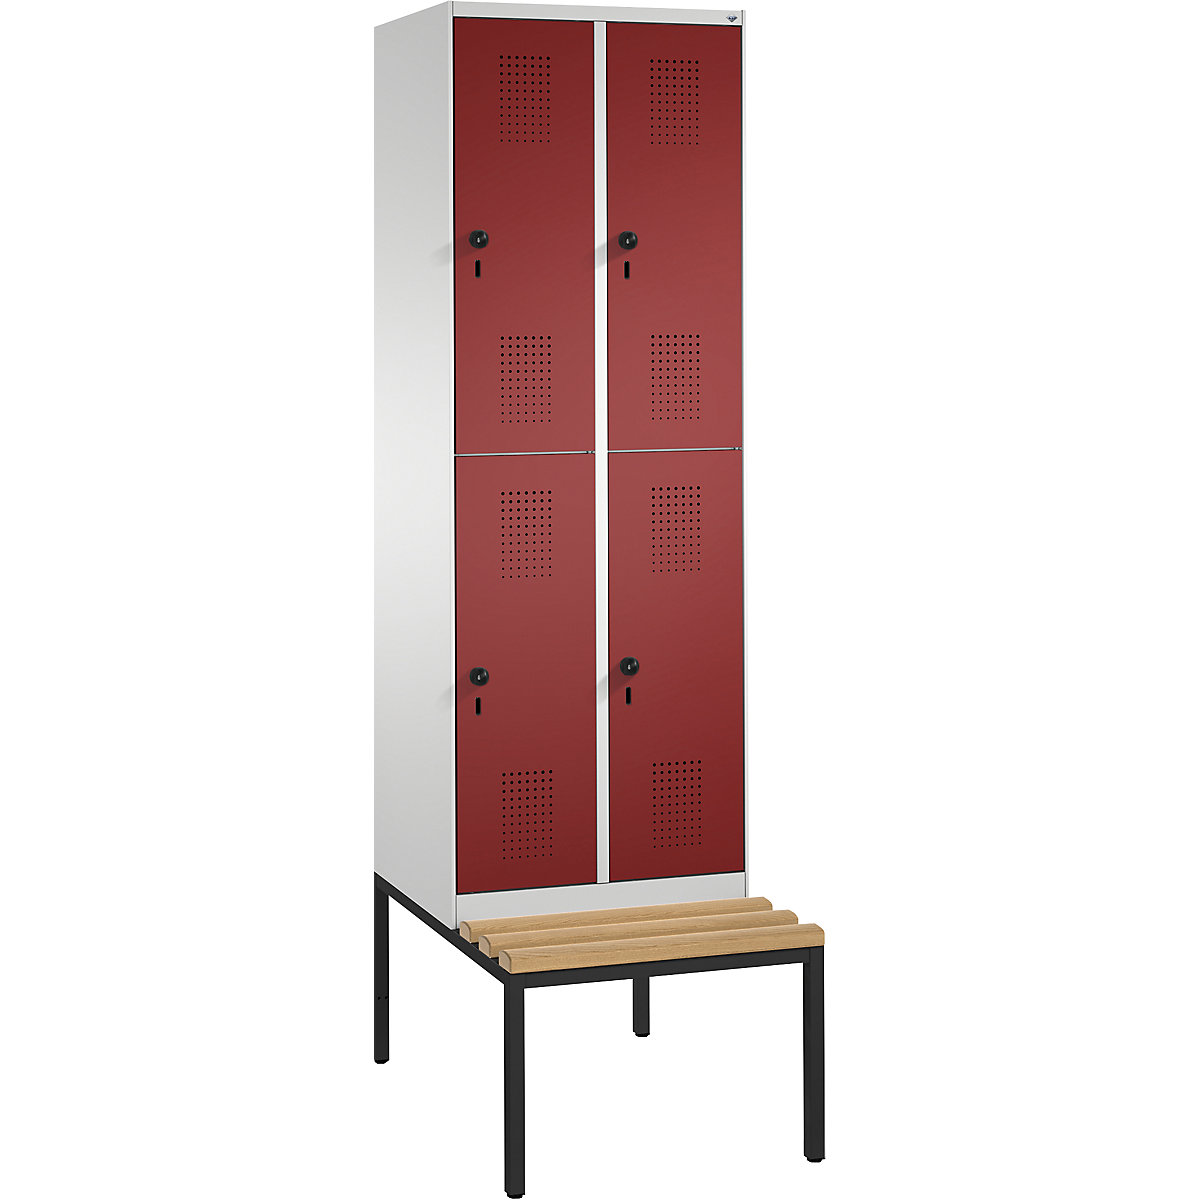 Garderobna omara EVOLO, dvonadstropna, s klopjo – C+P, 2 x 2 predelka, širina razdelka 300 mm, svetlo siva / rubinasto rdeča-9